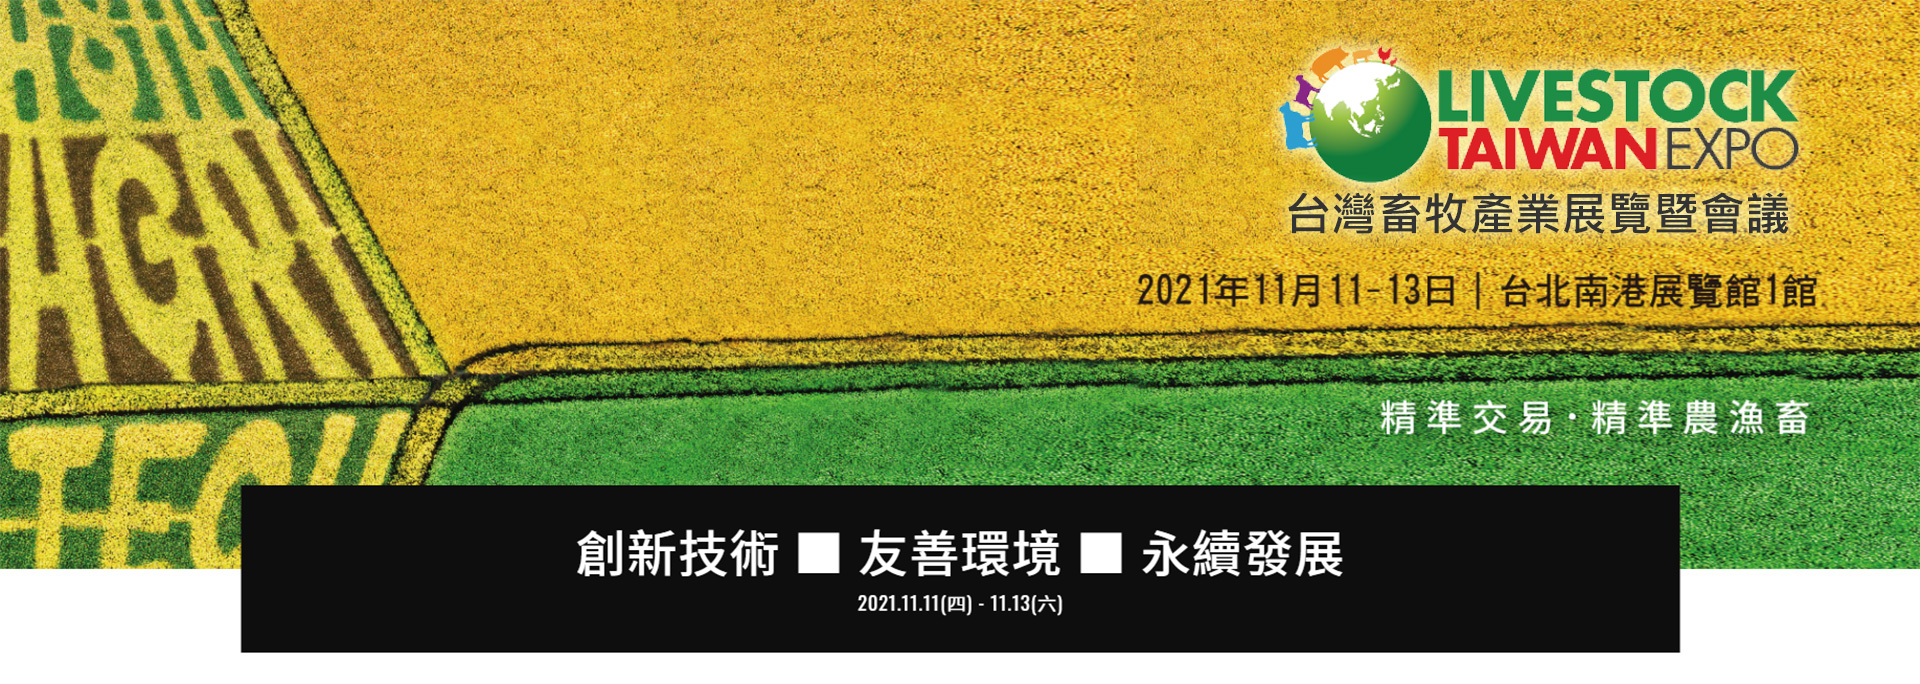 2021亞太區農業技術展覽暨會議